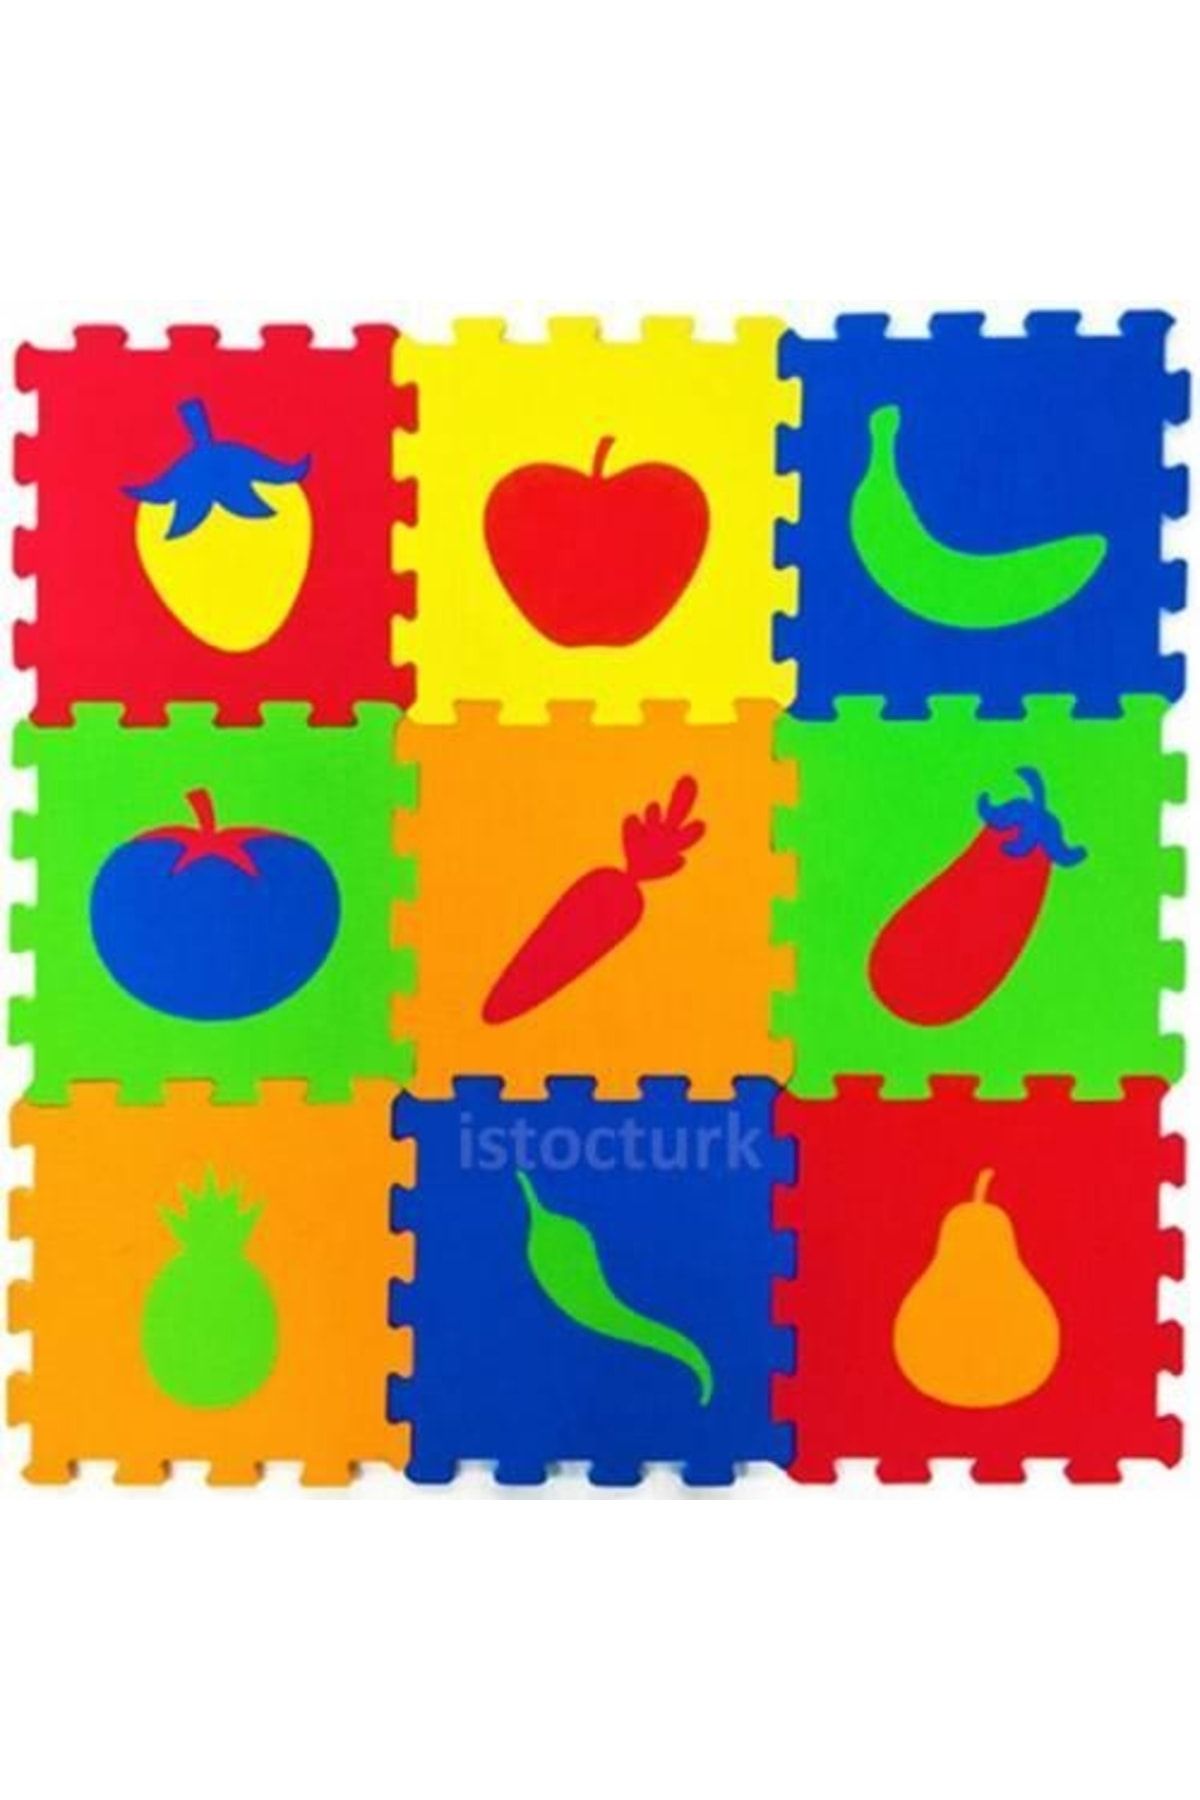 abnturk Geçmeli Oyun Halısı Sebze-meyveler Eva Puzzle 9pc 33x33cm Oyun Matı Çocuk Yaşam Alanı Zemin Döşemesi